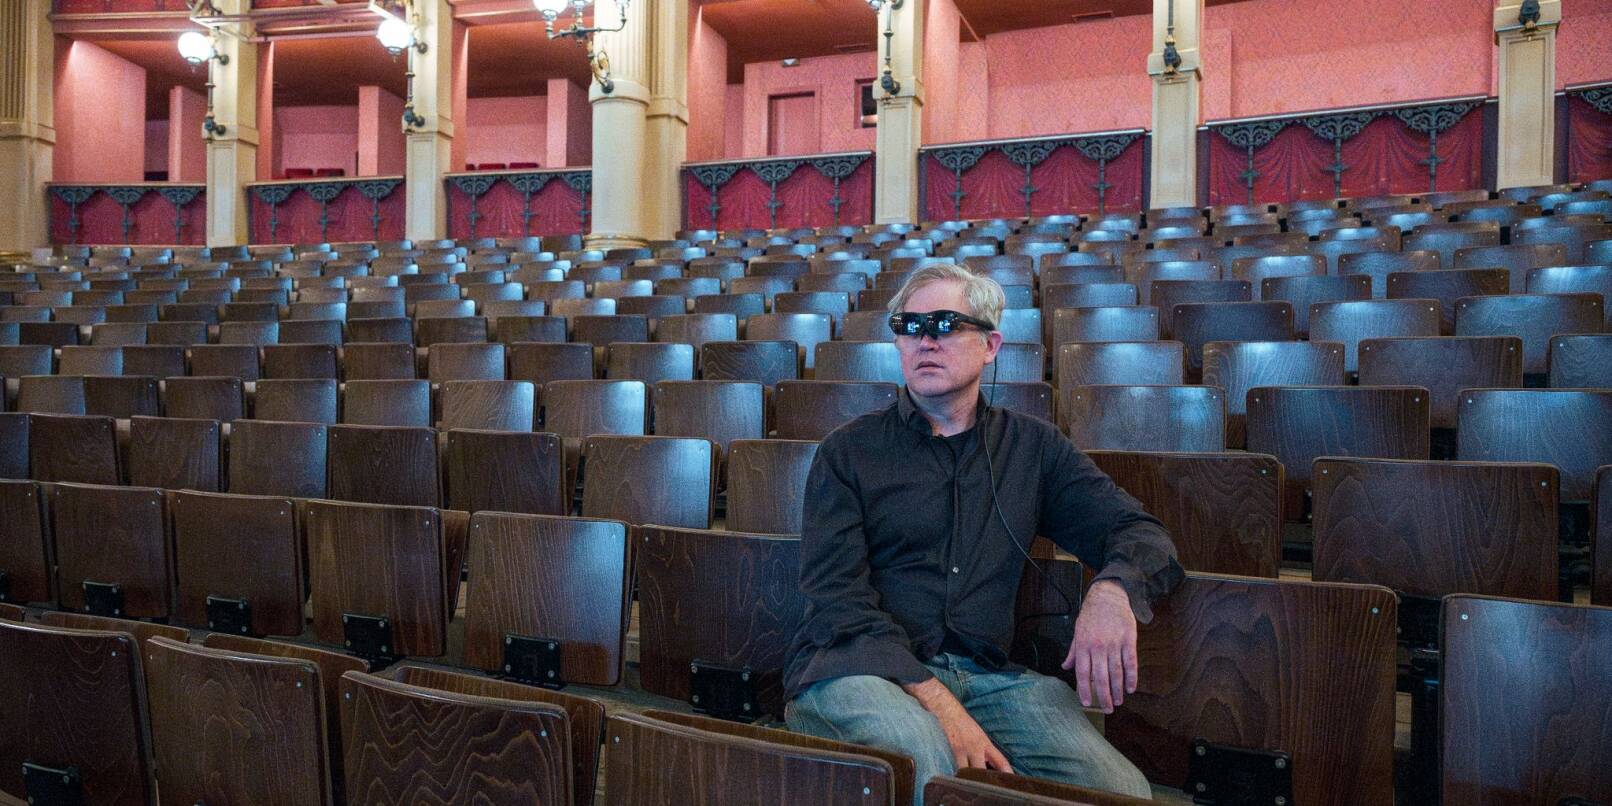 Regisseur Jay Scheib mit einer Augmented Reality (AR) Brille im Zuschauerraum des Festspielhauses.